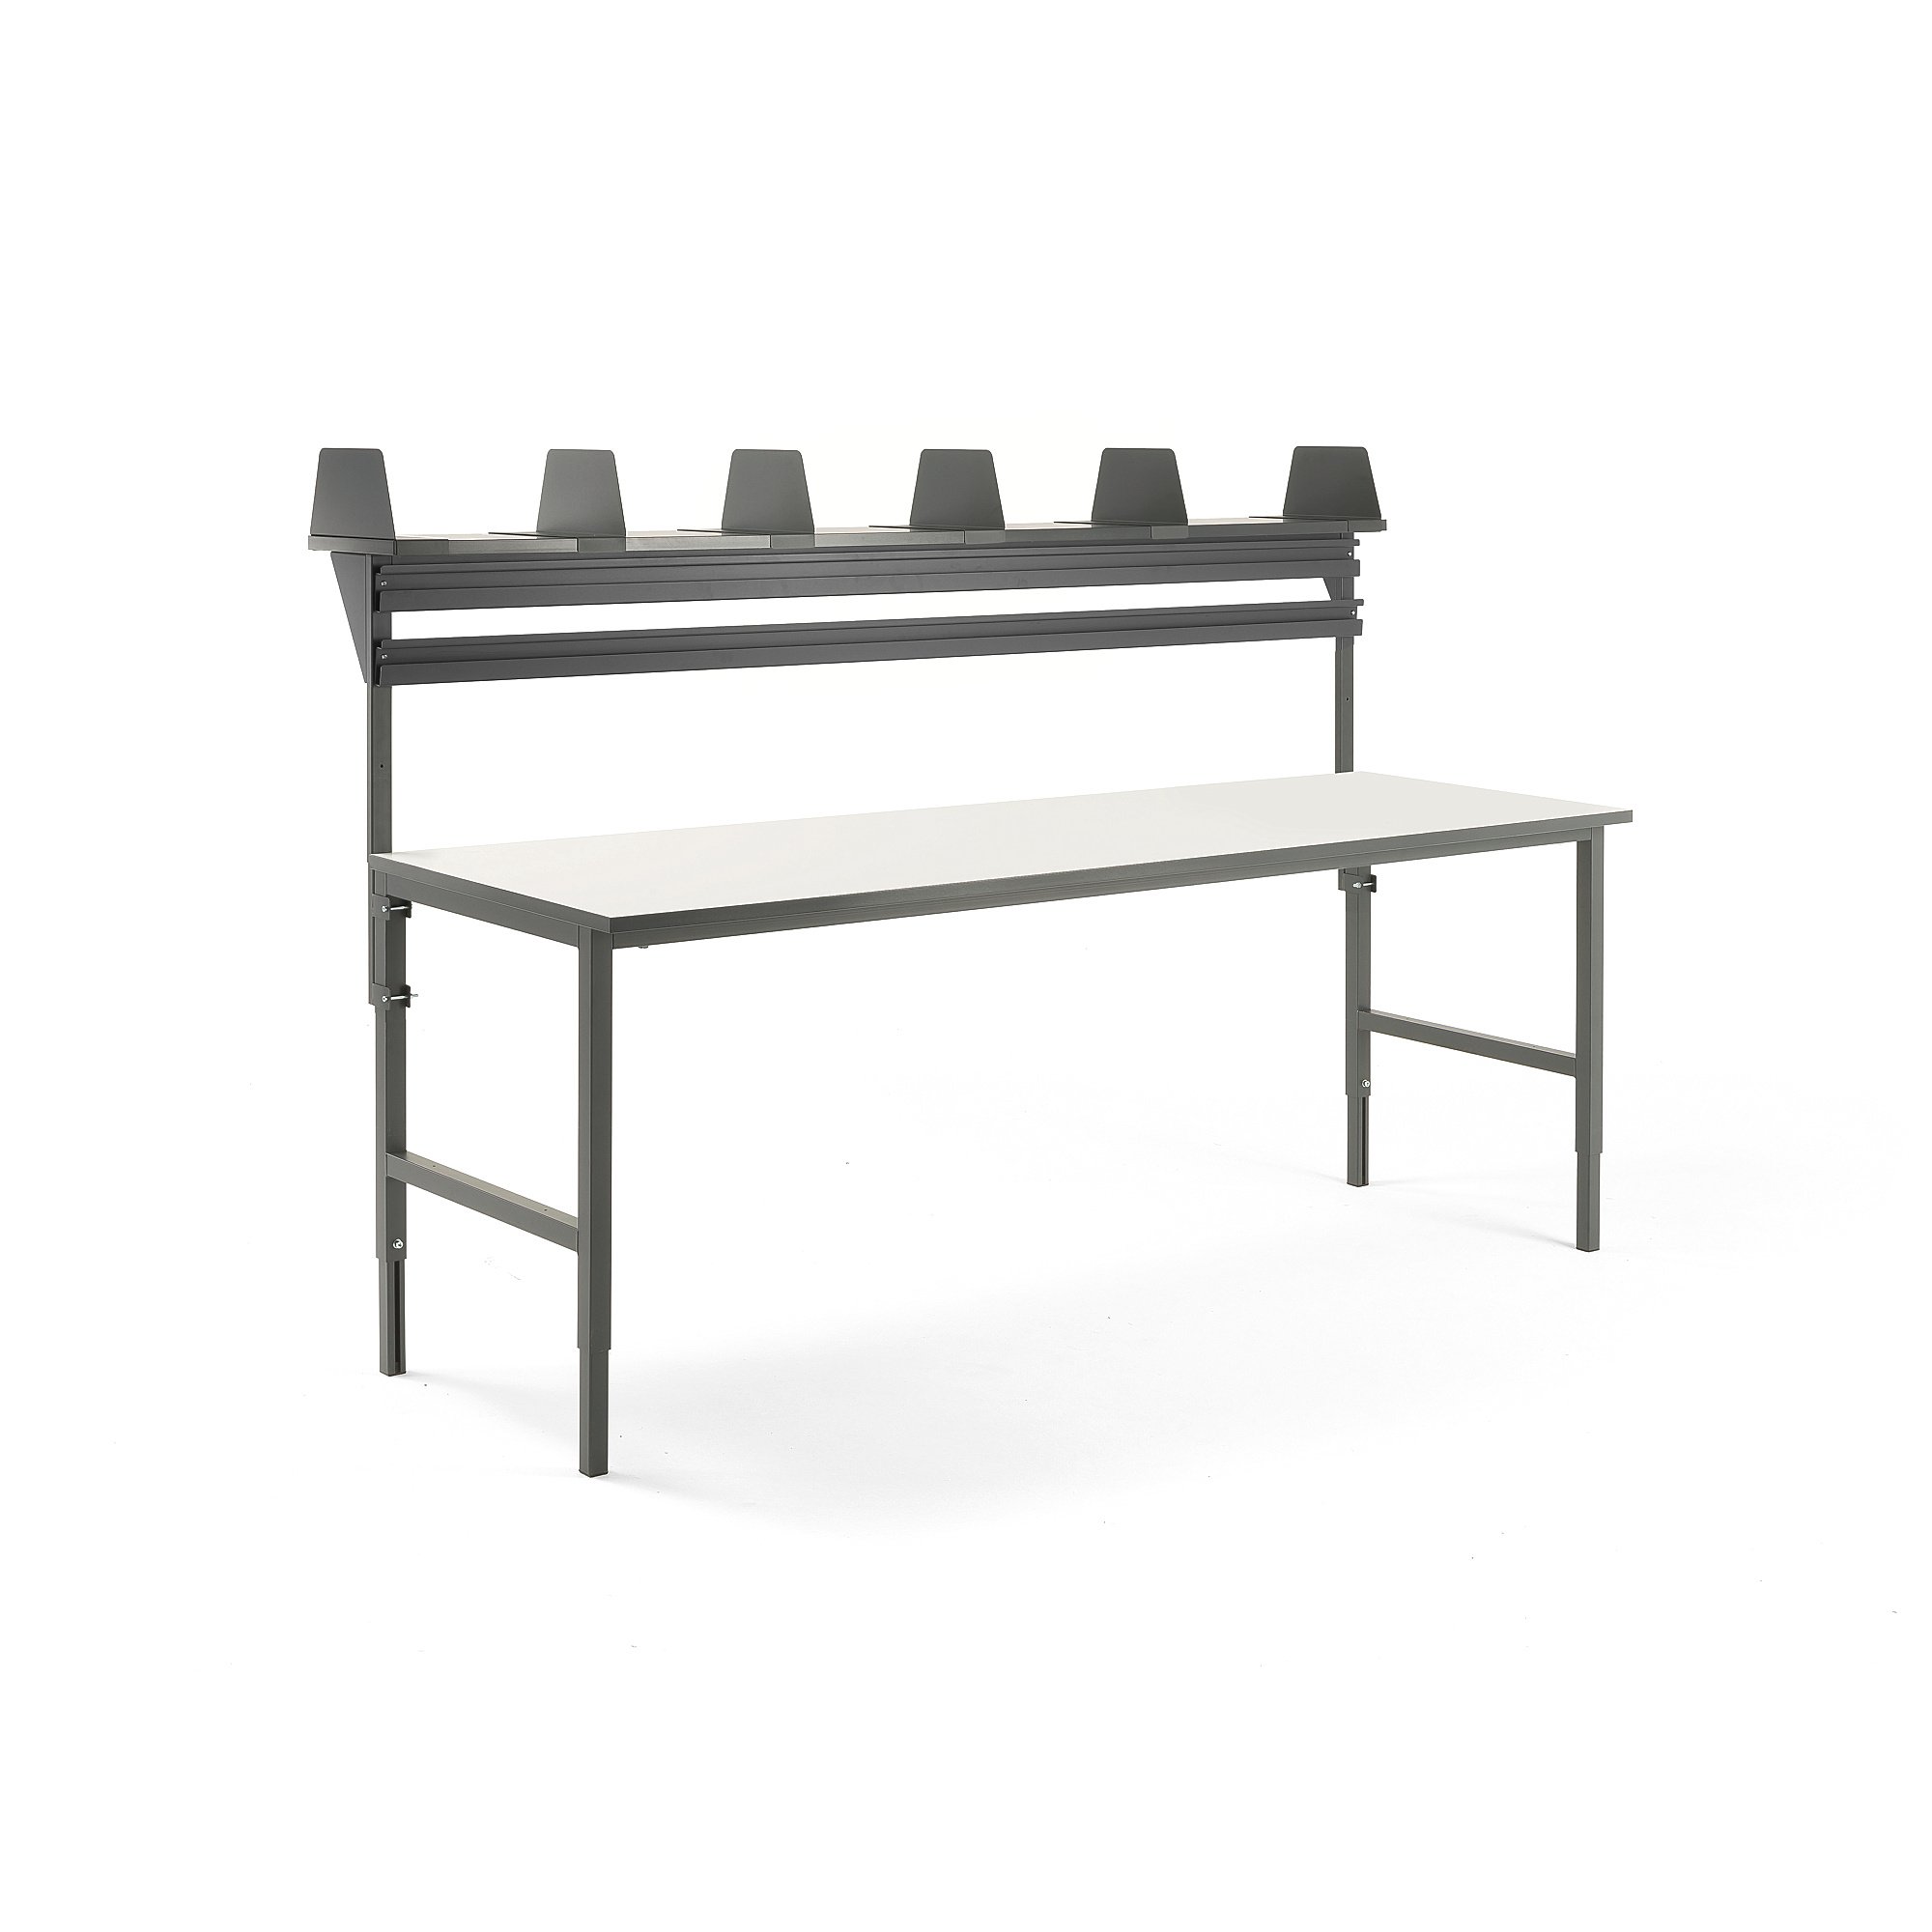 E-shop Dielenský stôl Cargo, 2400x750 mm, vrchná polica + 2 koľajnice